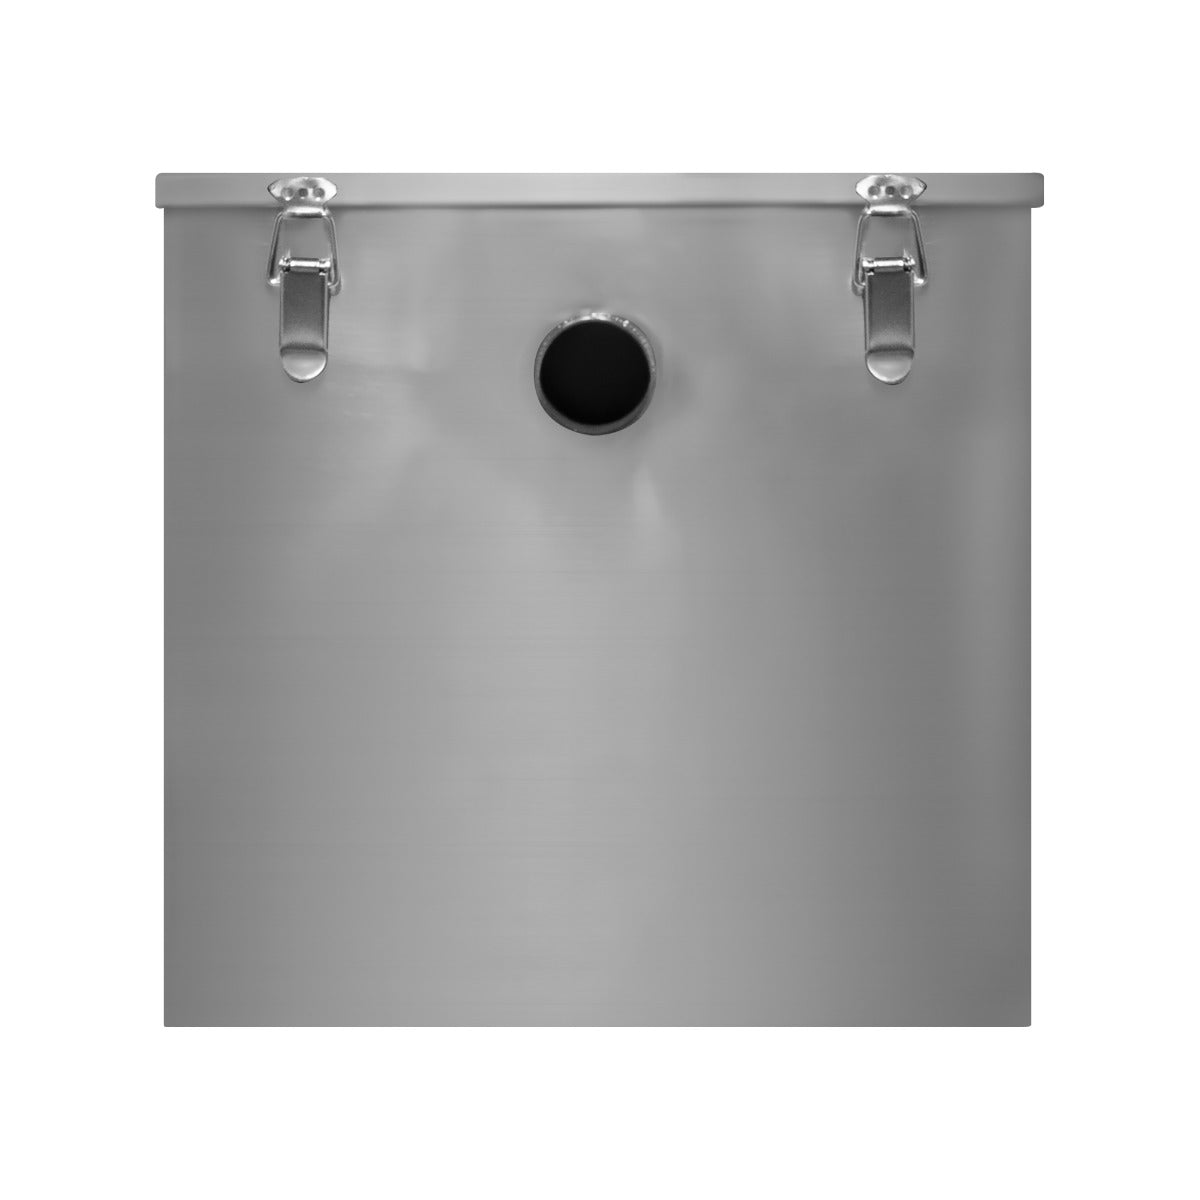 Separatore di grasso commerciale 60L in acciaio inox con filtro intercettatore per rifiuti Ristorante